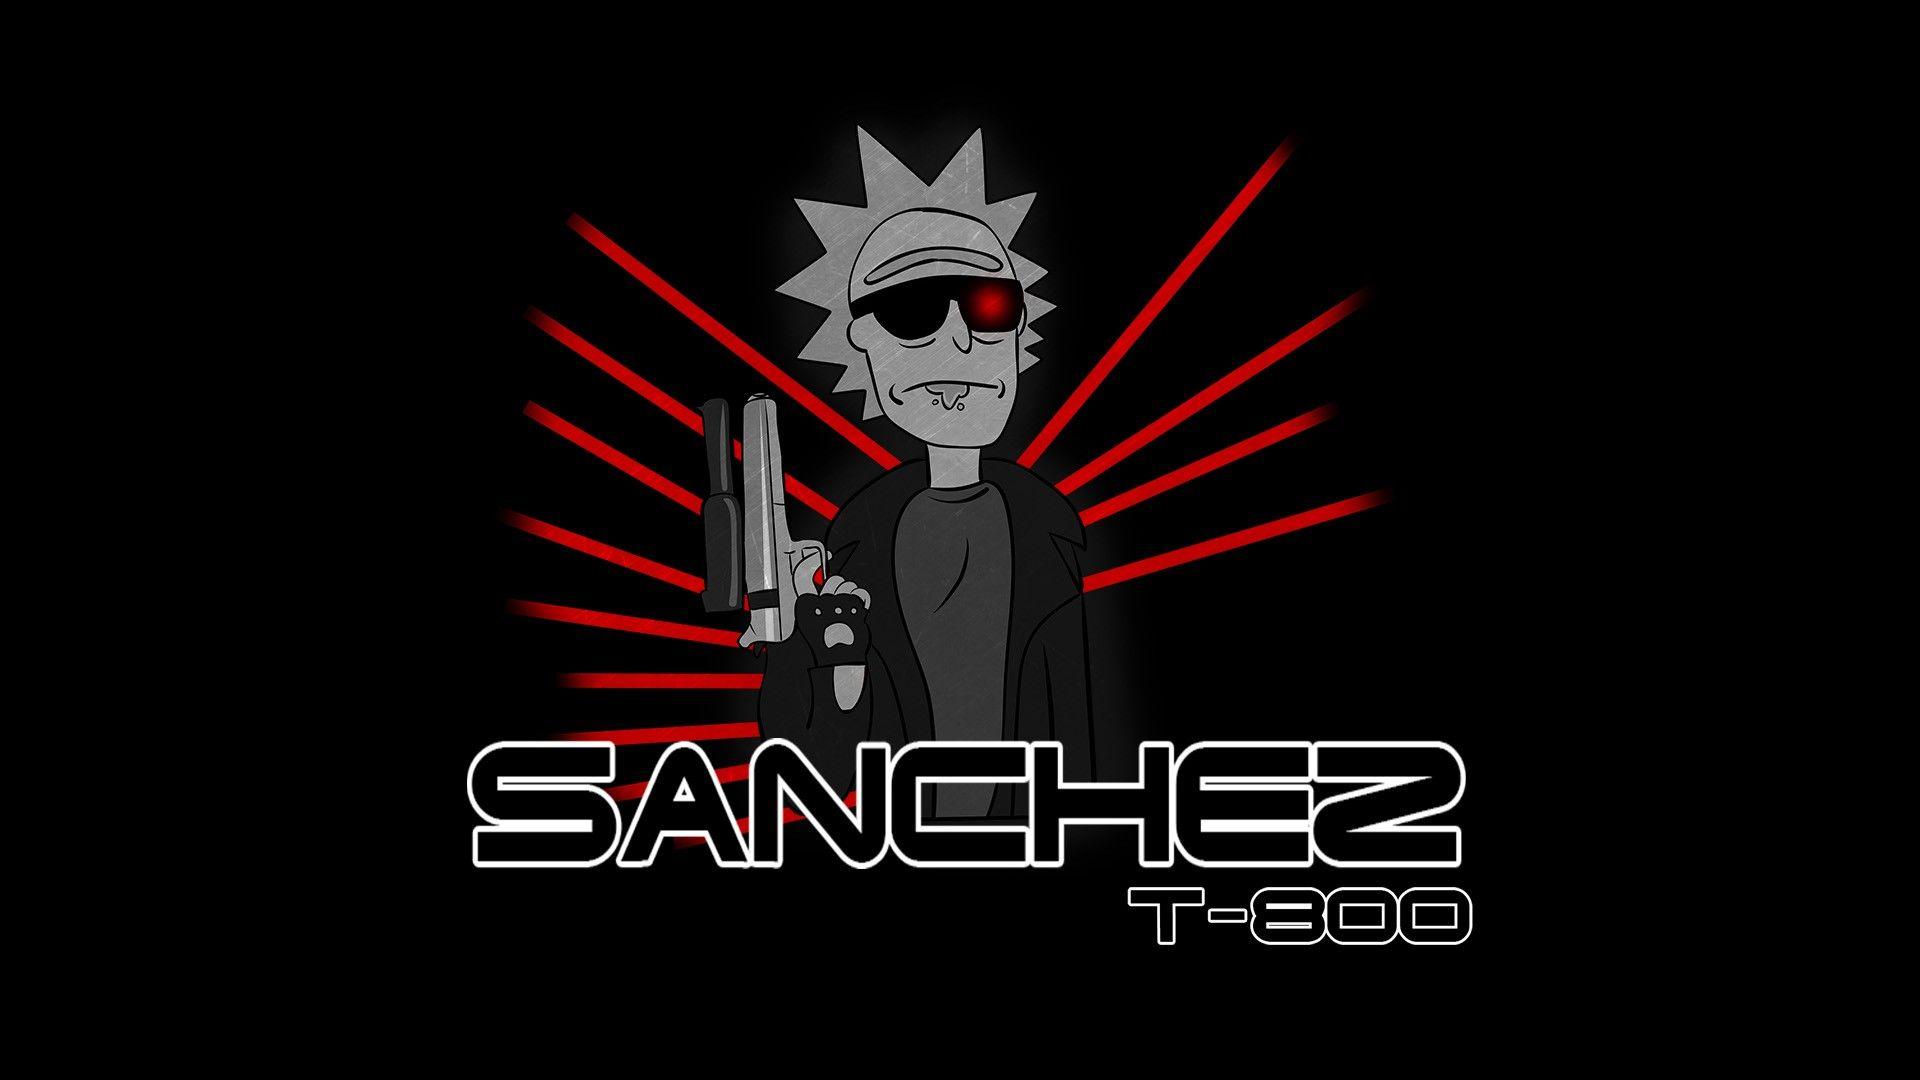 Sanchez T 800 By PimpBoy. Rick And Morty